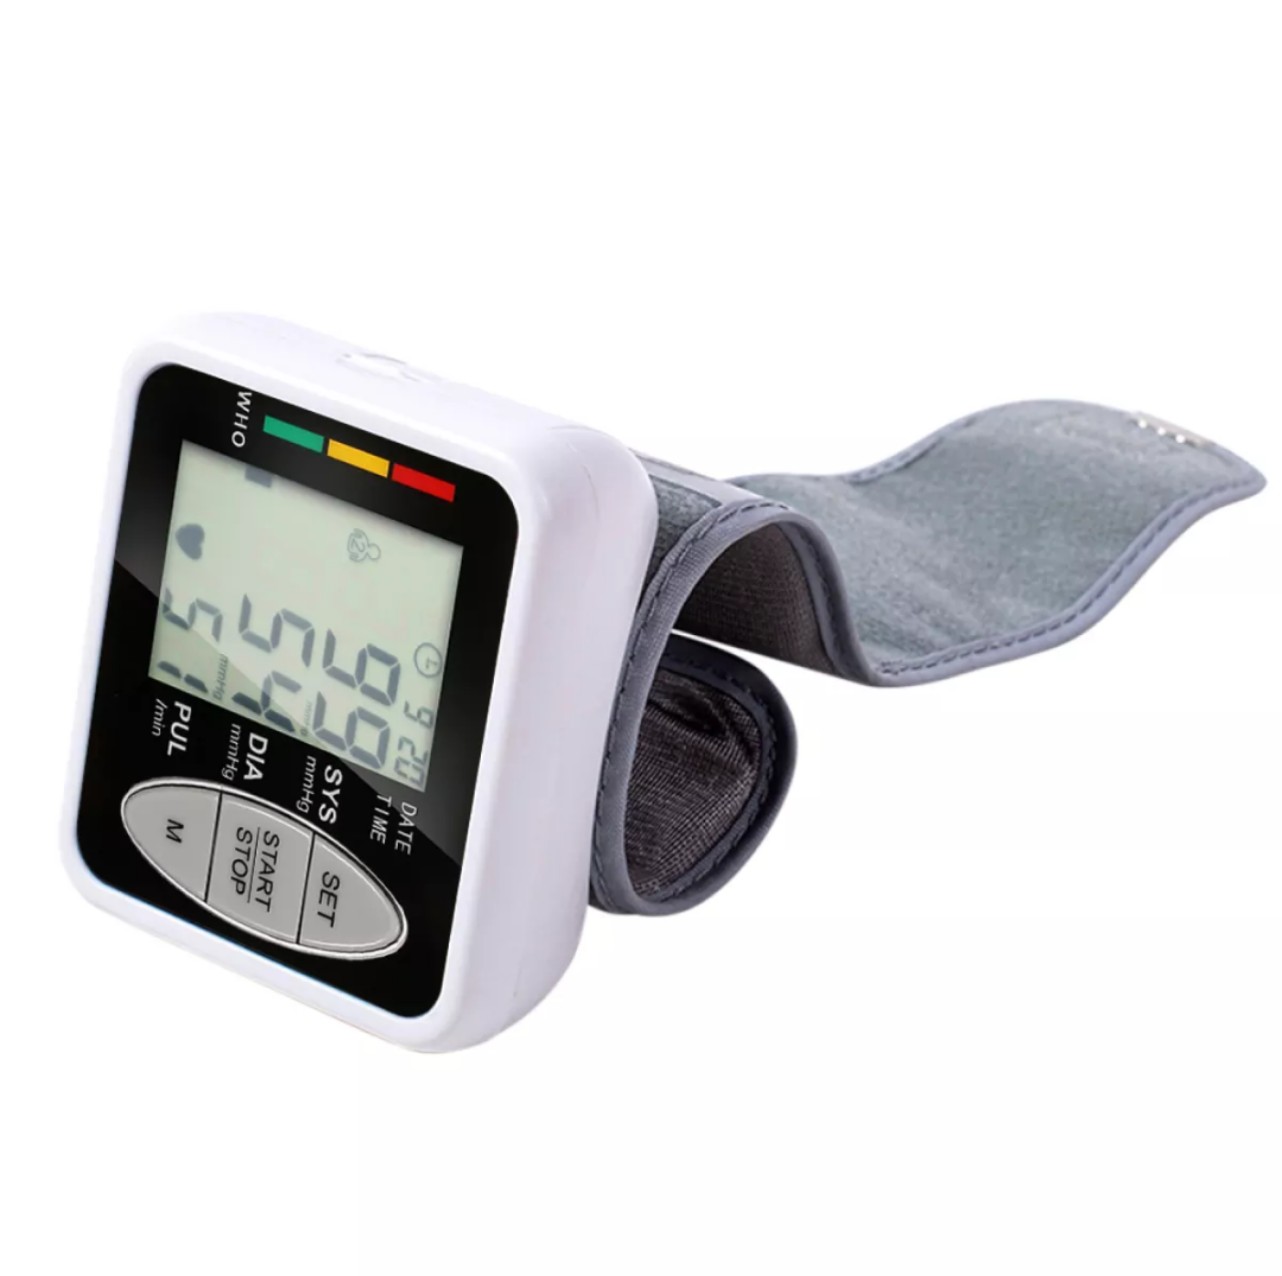 Máy đo huyết áp nhịp tim cổ tay màn hình led điện tử mẫu mới loại tốt siêu chính xác đạt Tiêu chuẩn WHO